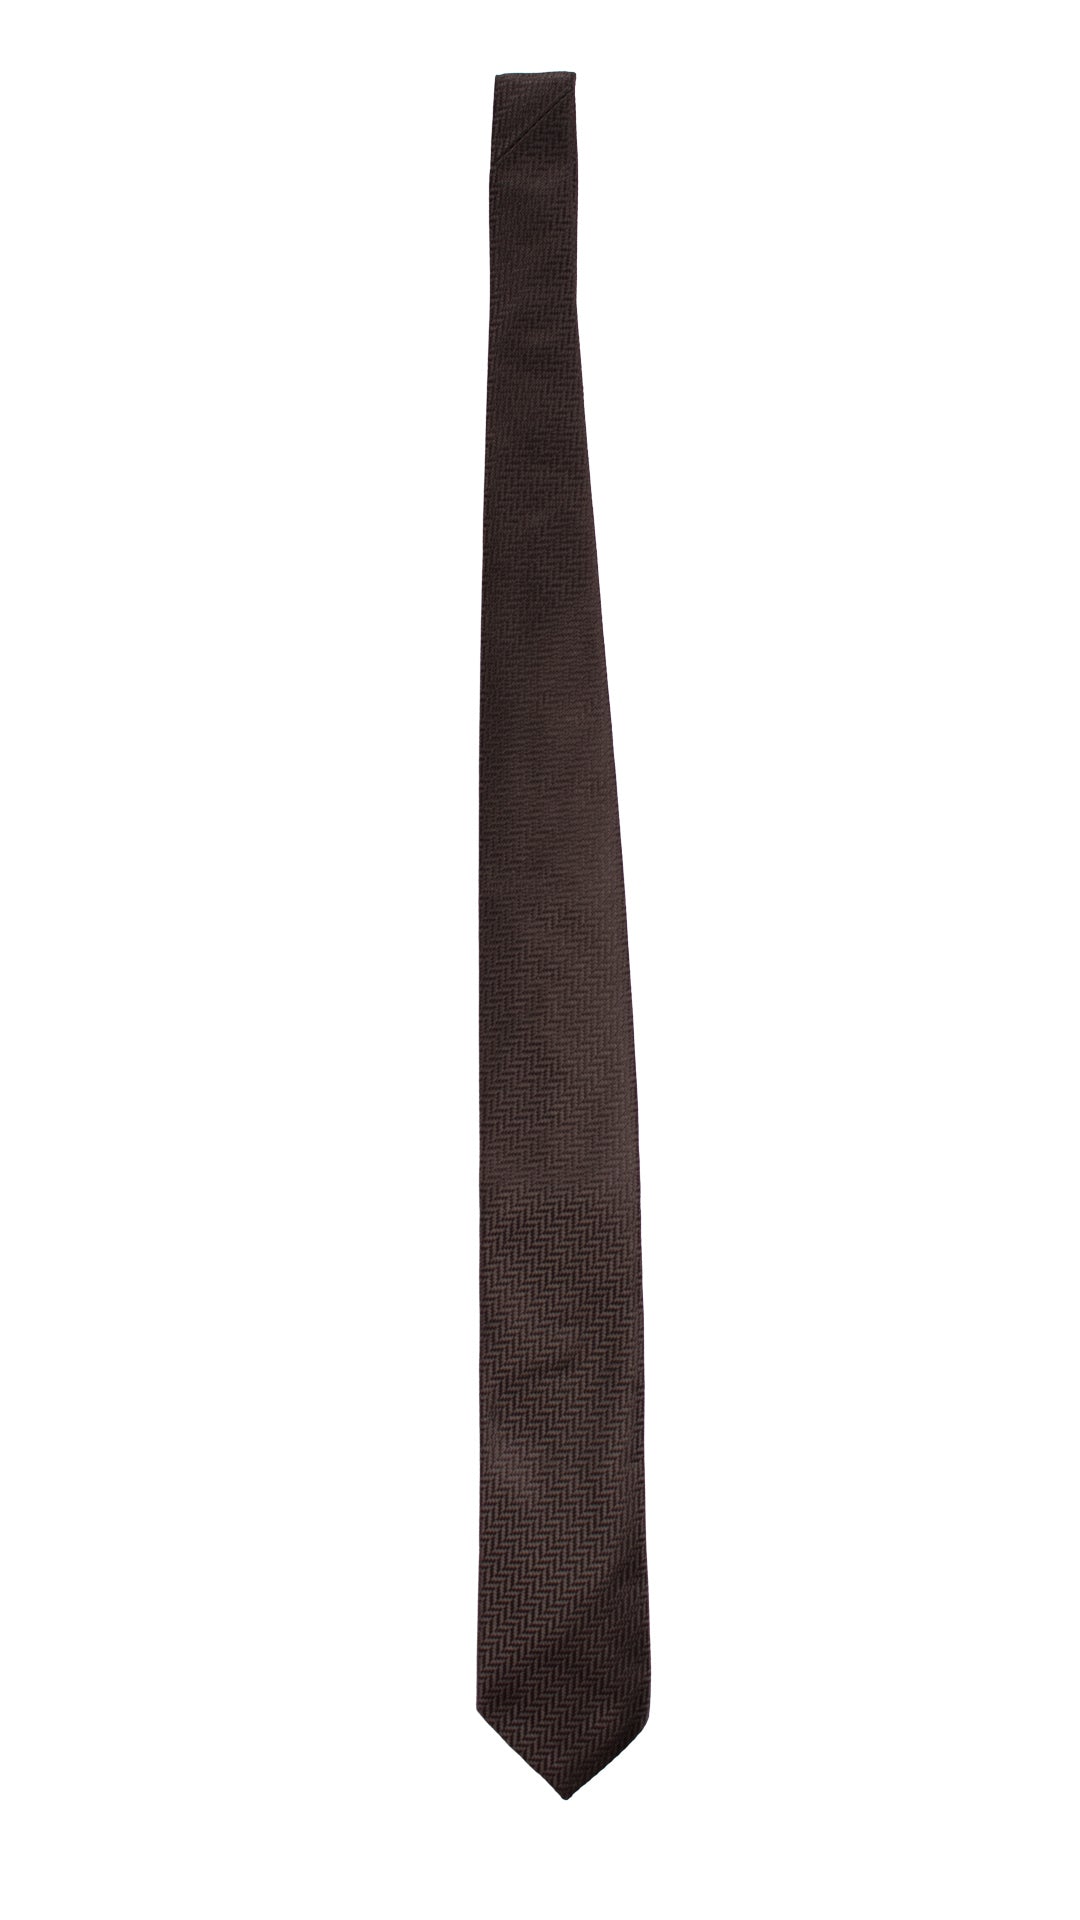 Cravatta da Cerimonia di Seta Nera Fantasia Lisca di Pesce Tono su Tono CY5908 Intera